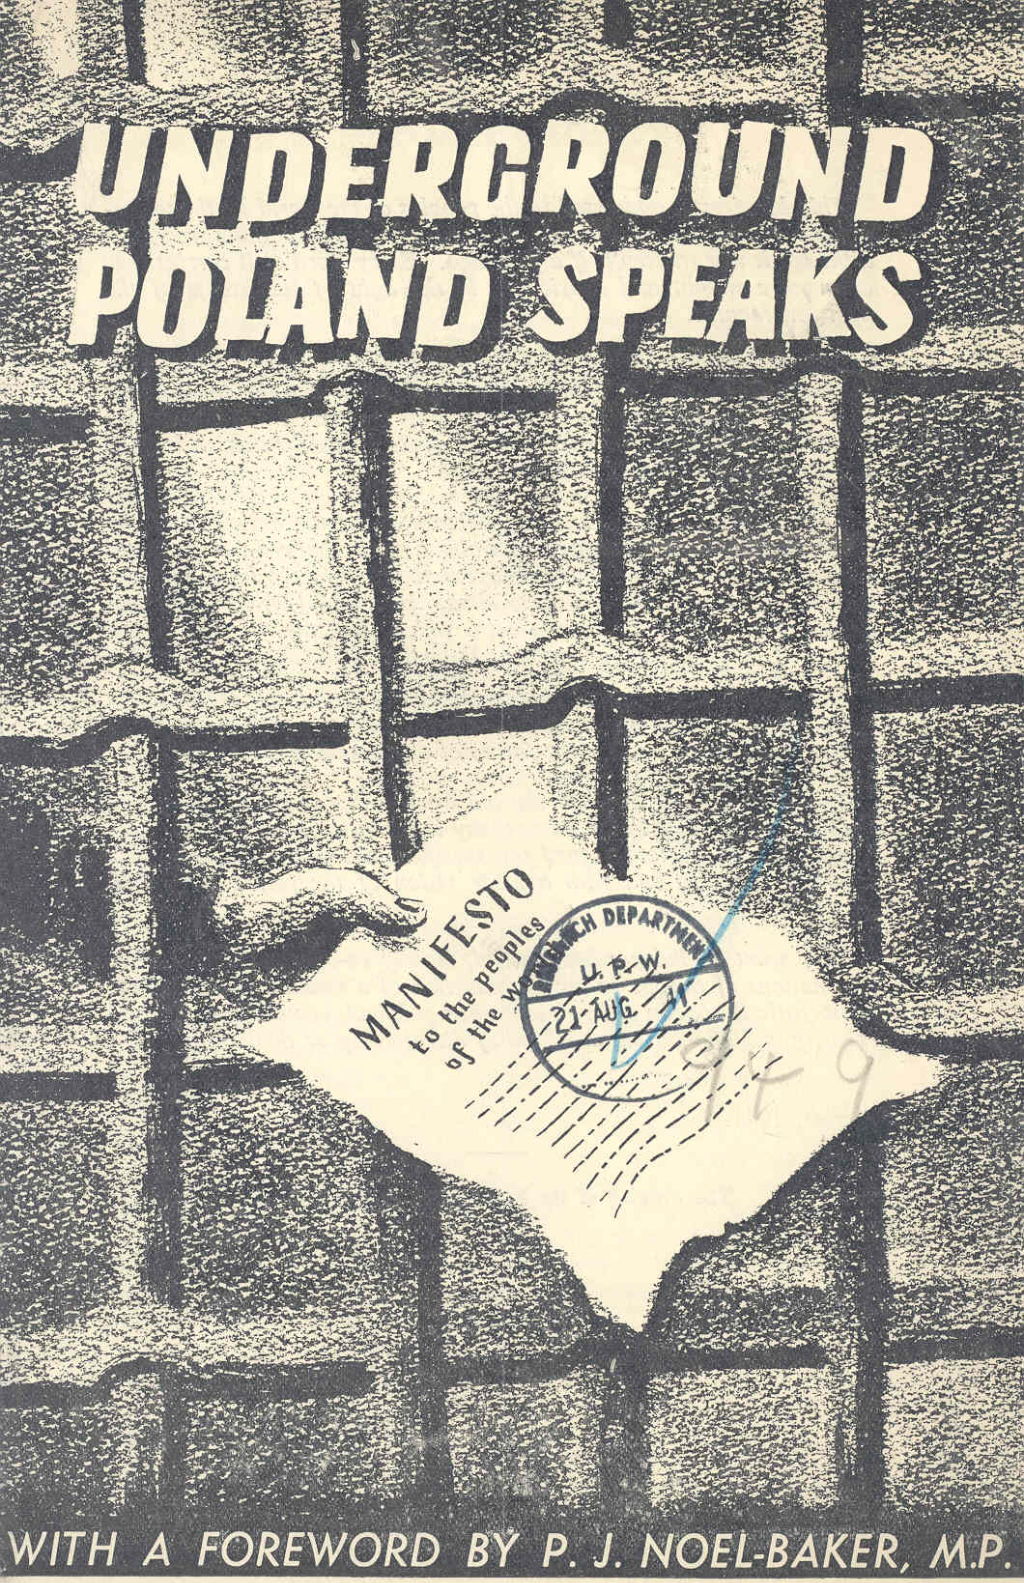 'Underground Poland speaks', 1941